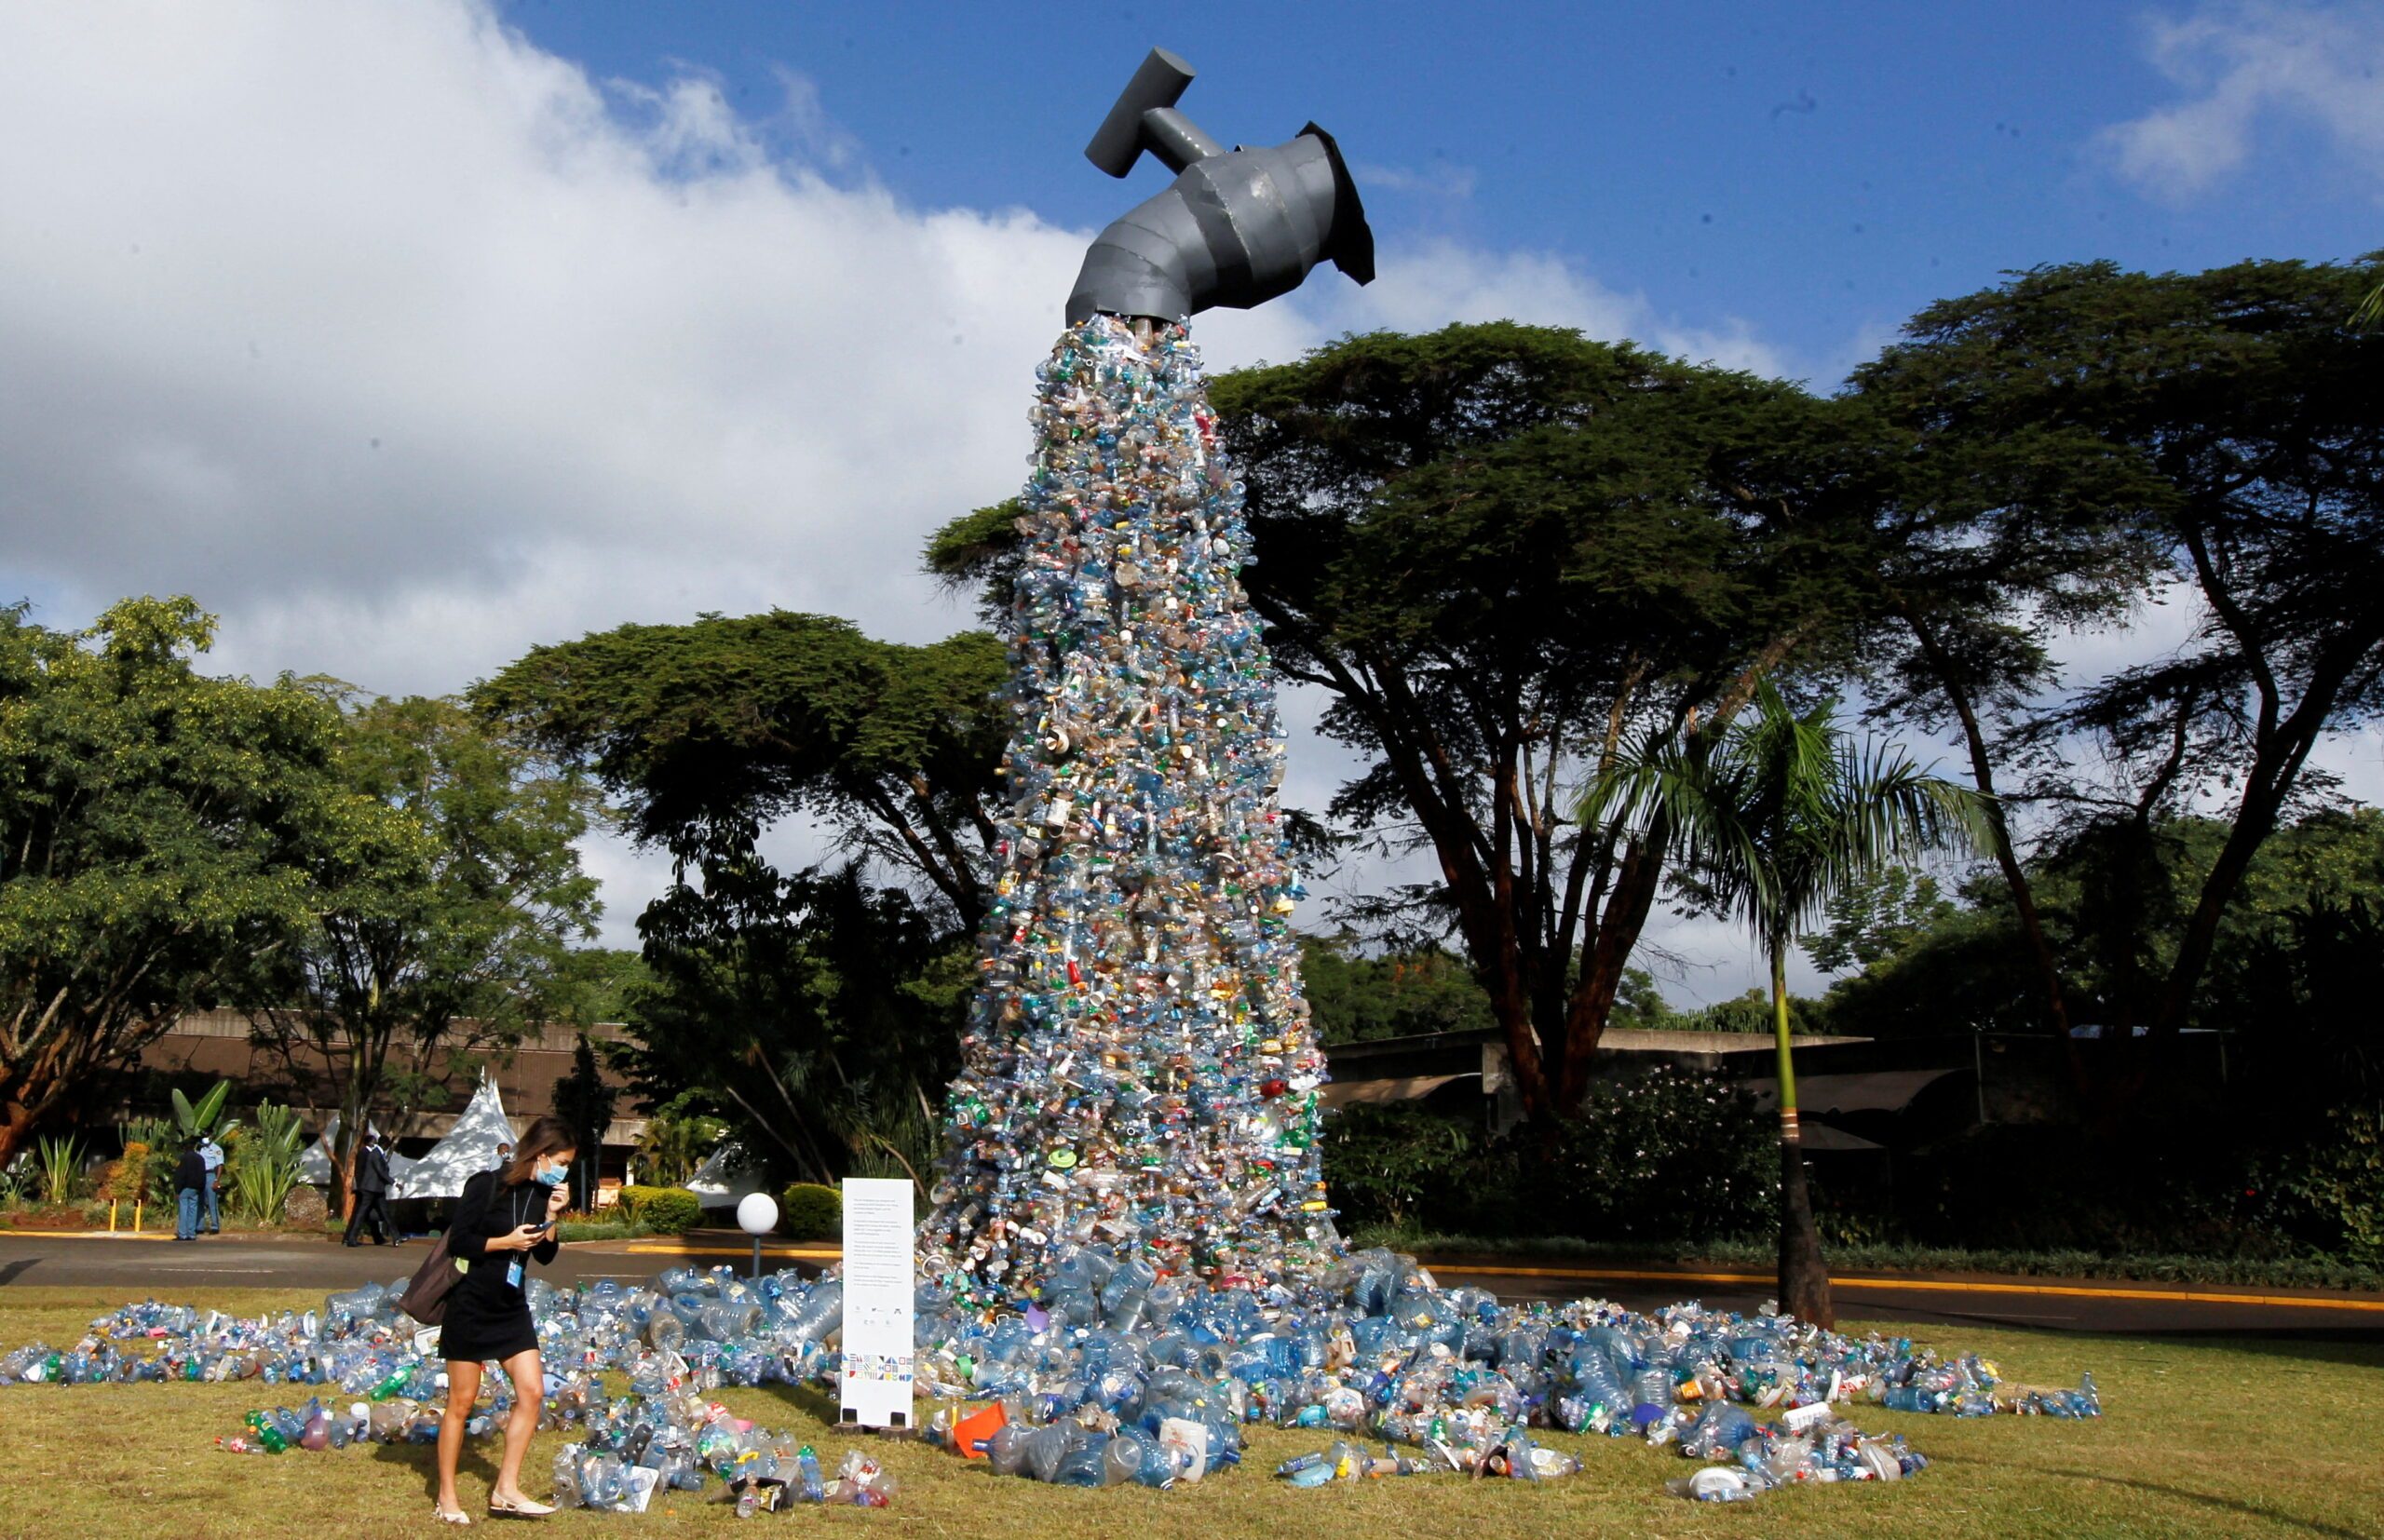 Perjanjian PBB harus mengatasi produksi plastik bermasalah, kata Jepang